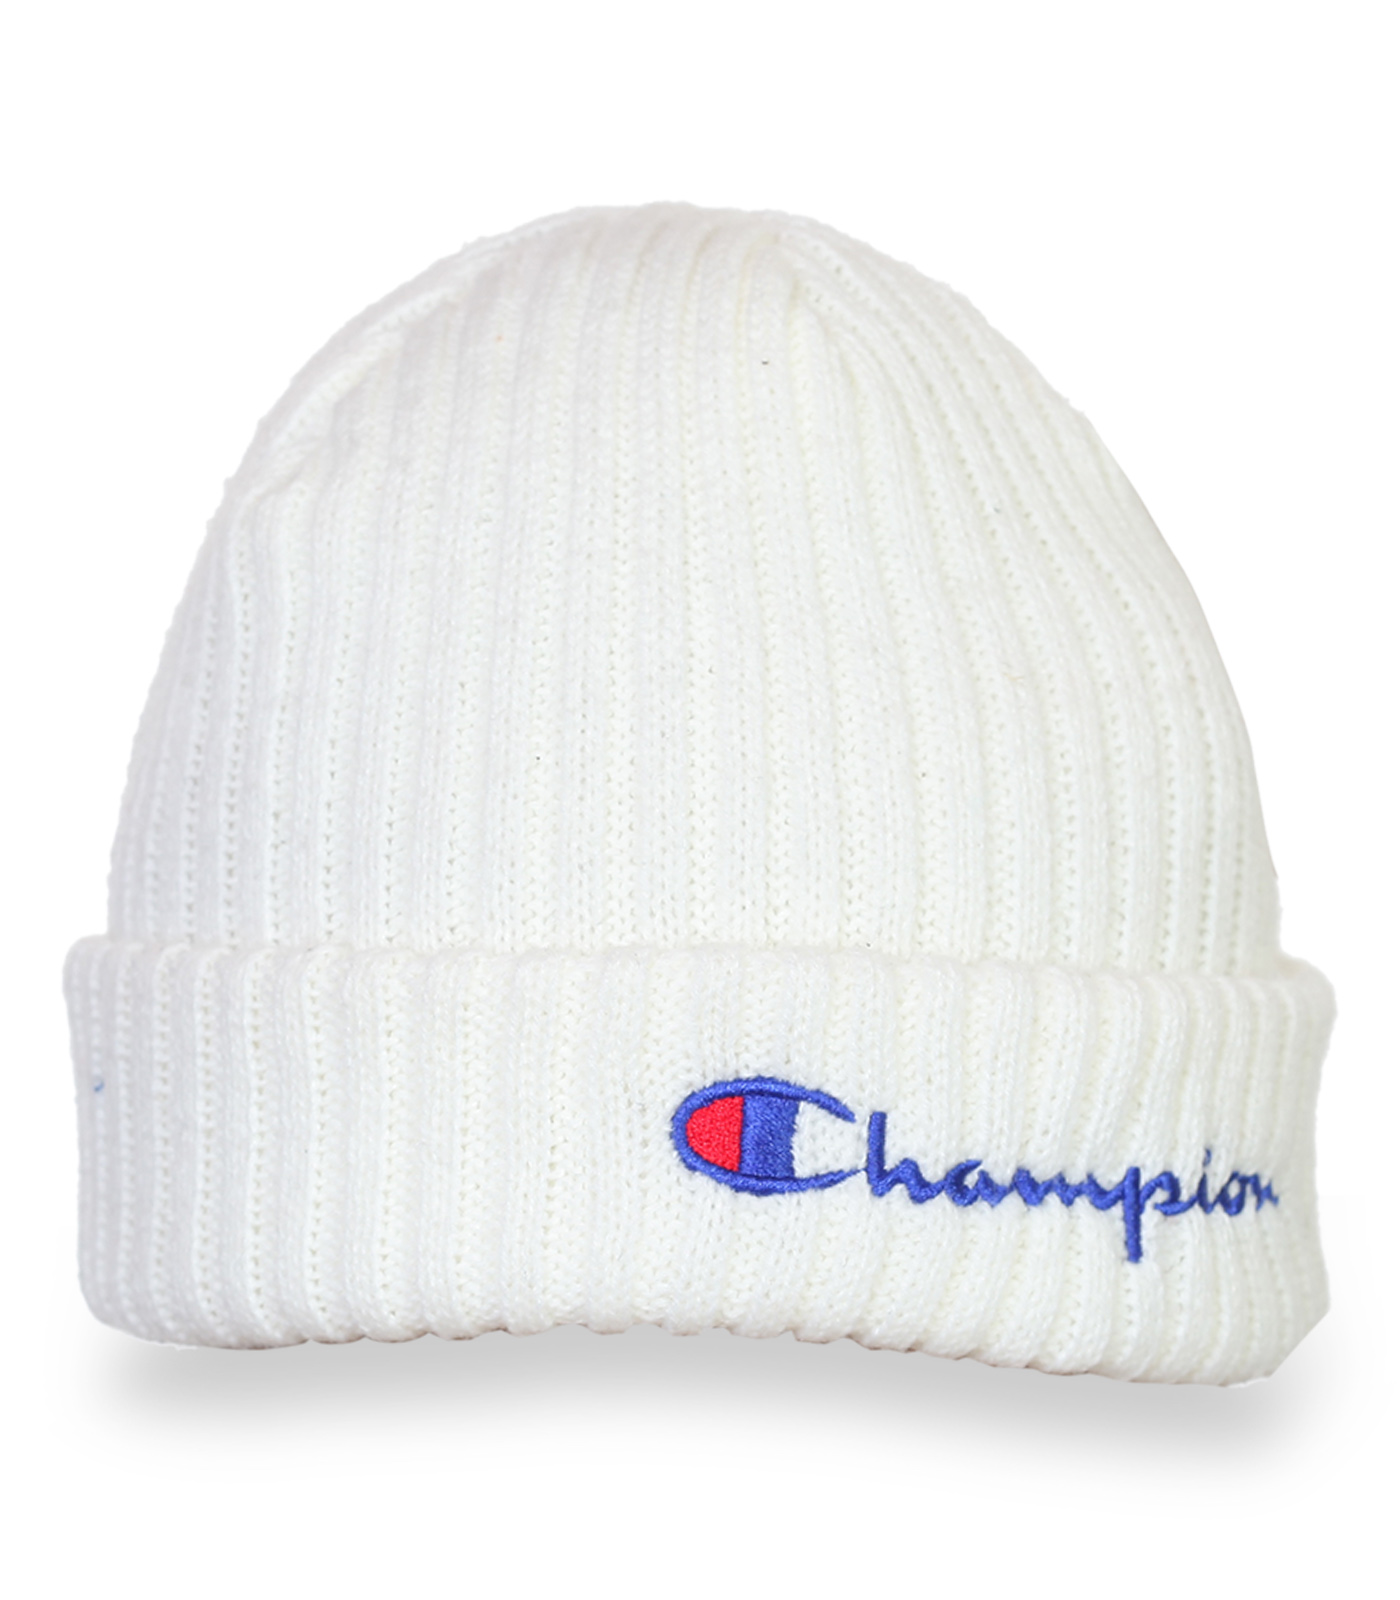 Практичная белая шапка с логотипом Champion